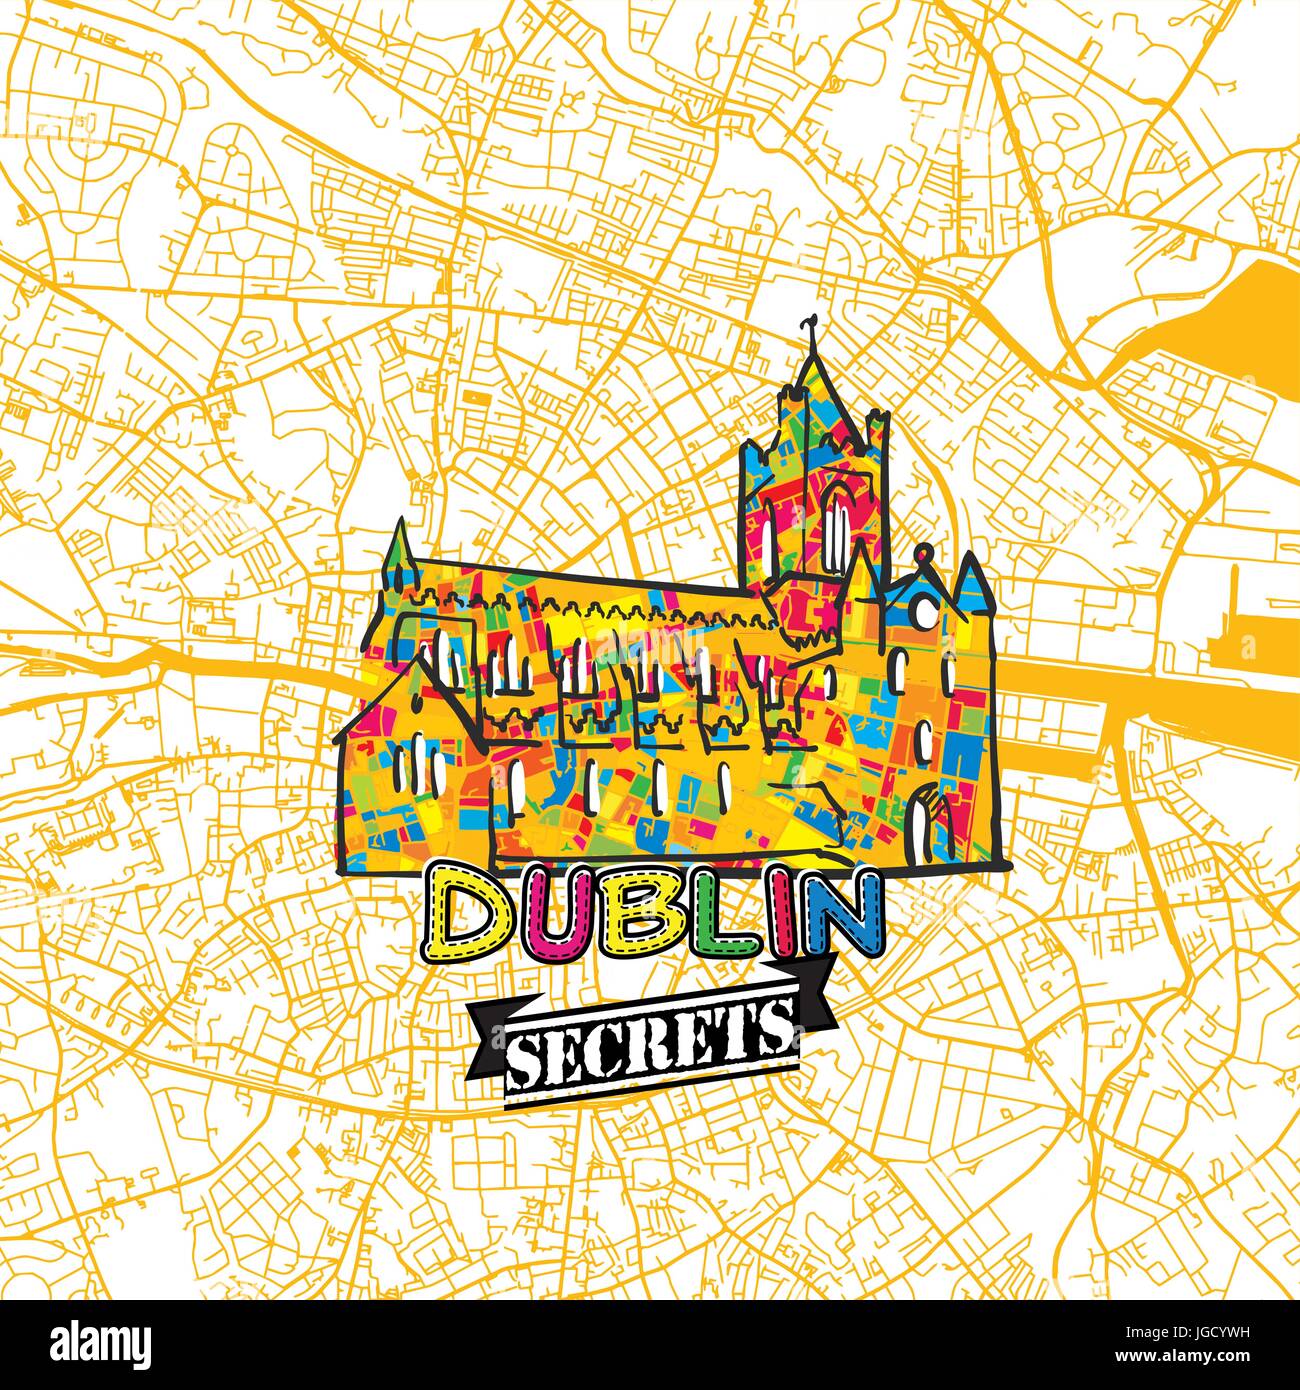 Dublin Reise Geheimnisse Art Map für die Zuordnung von Experten und Reiseführer. Handgemachte Stadt Logo, Typo-Abzeichen und Hand gezeichnete Vektor-Bild an der Spitze sind gruppiert und Stock Vektor